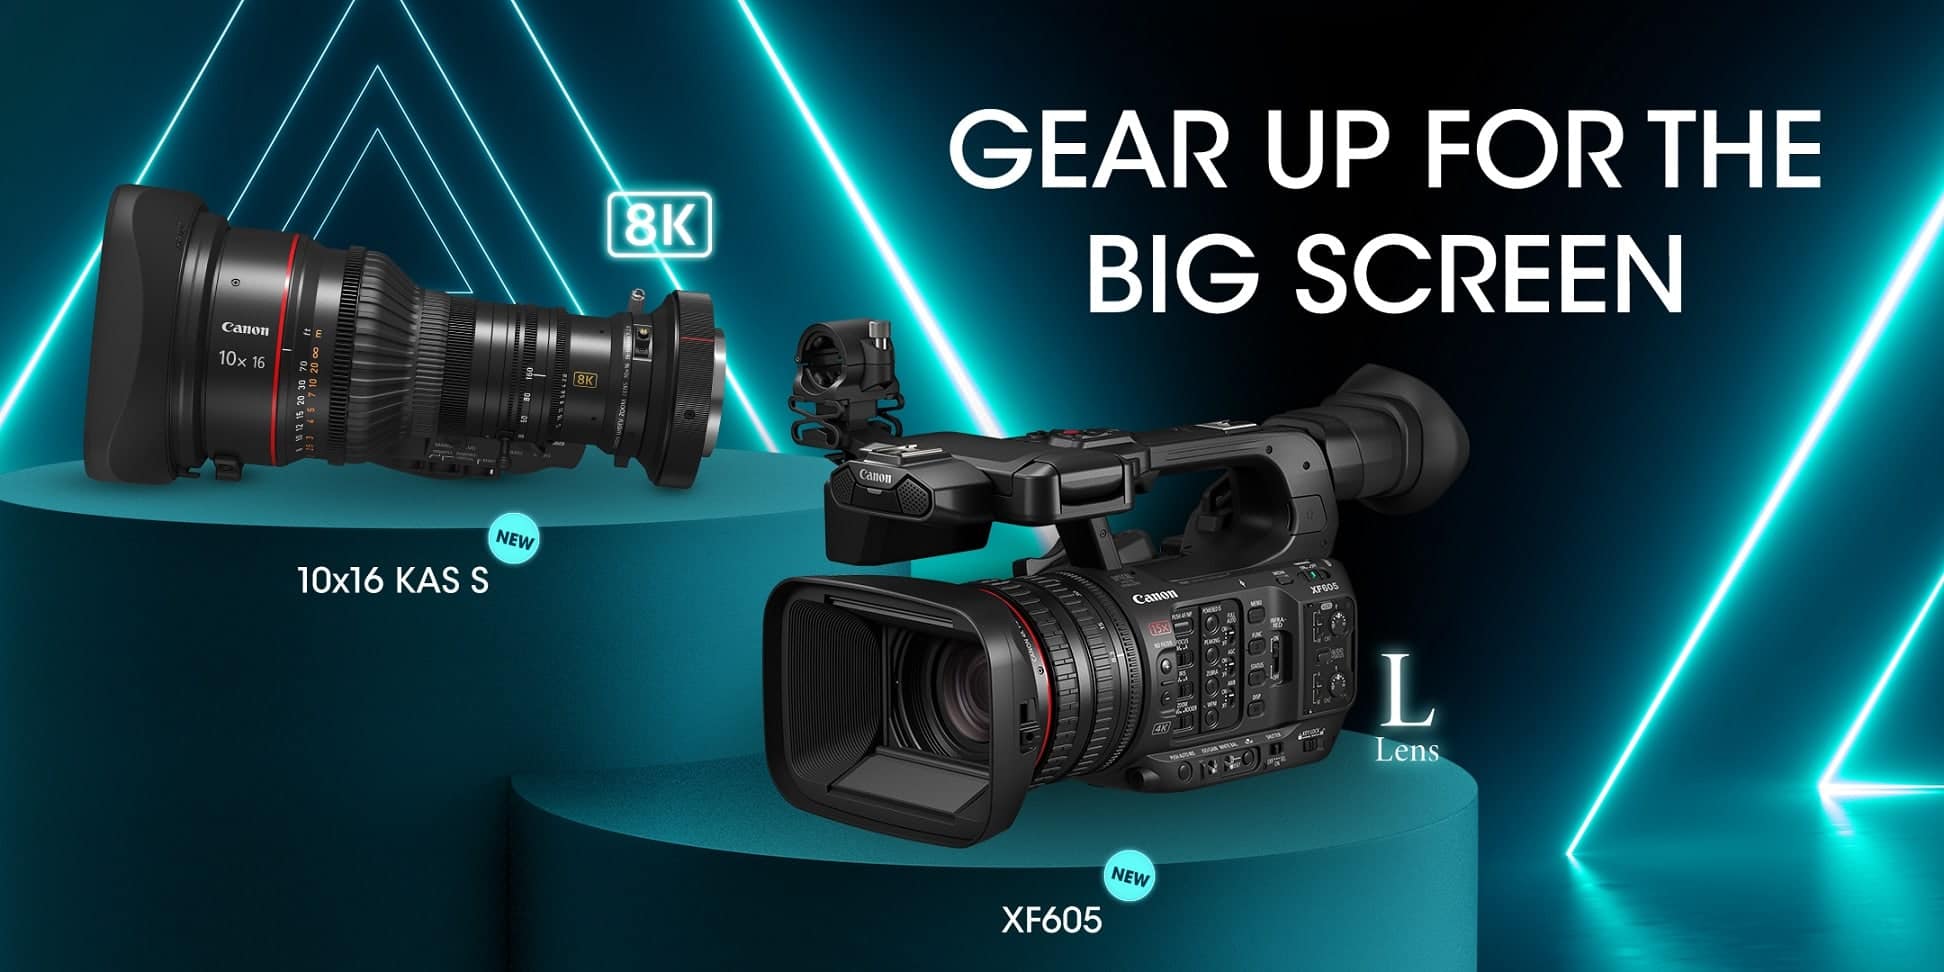 เปิดตัว Canon XF605 กล้องวีดีโอระดับโปรดักชัน พร้อมเลนส์ซูม Canon 10x16 KAS S 1